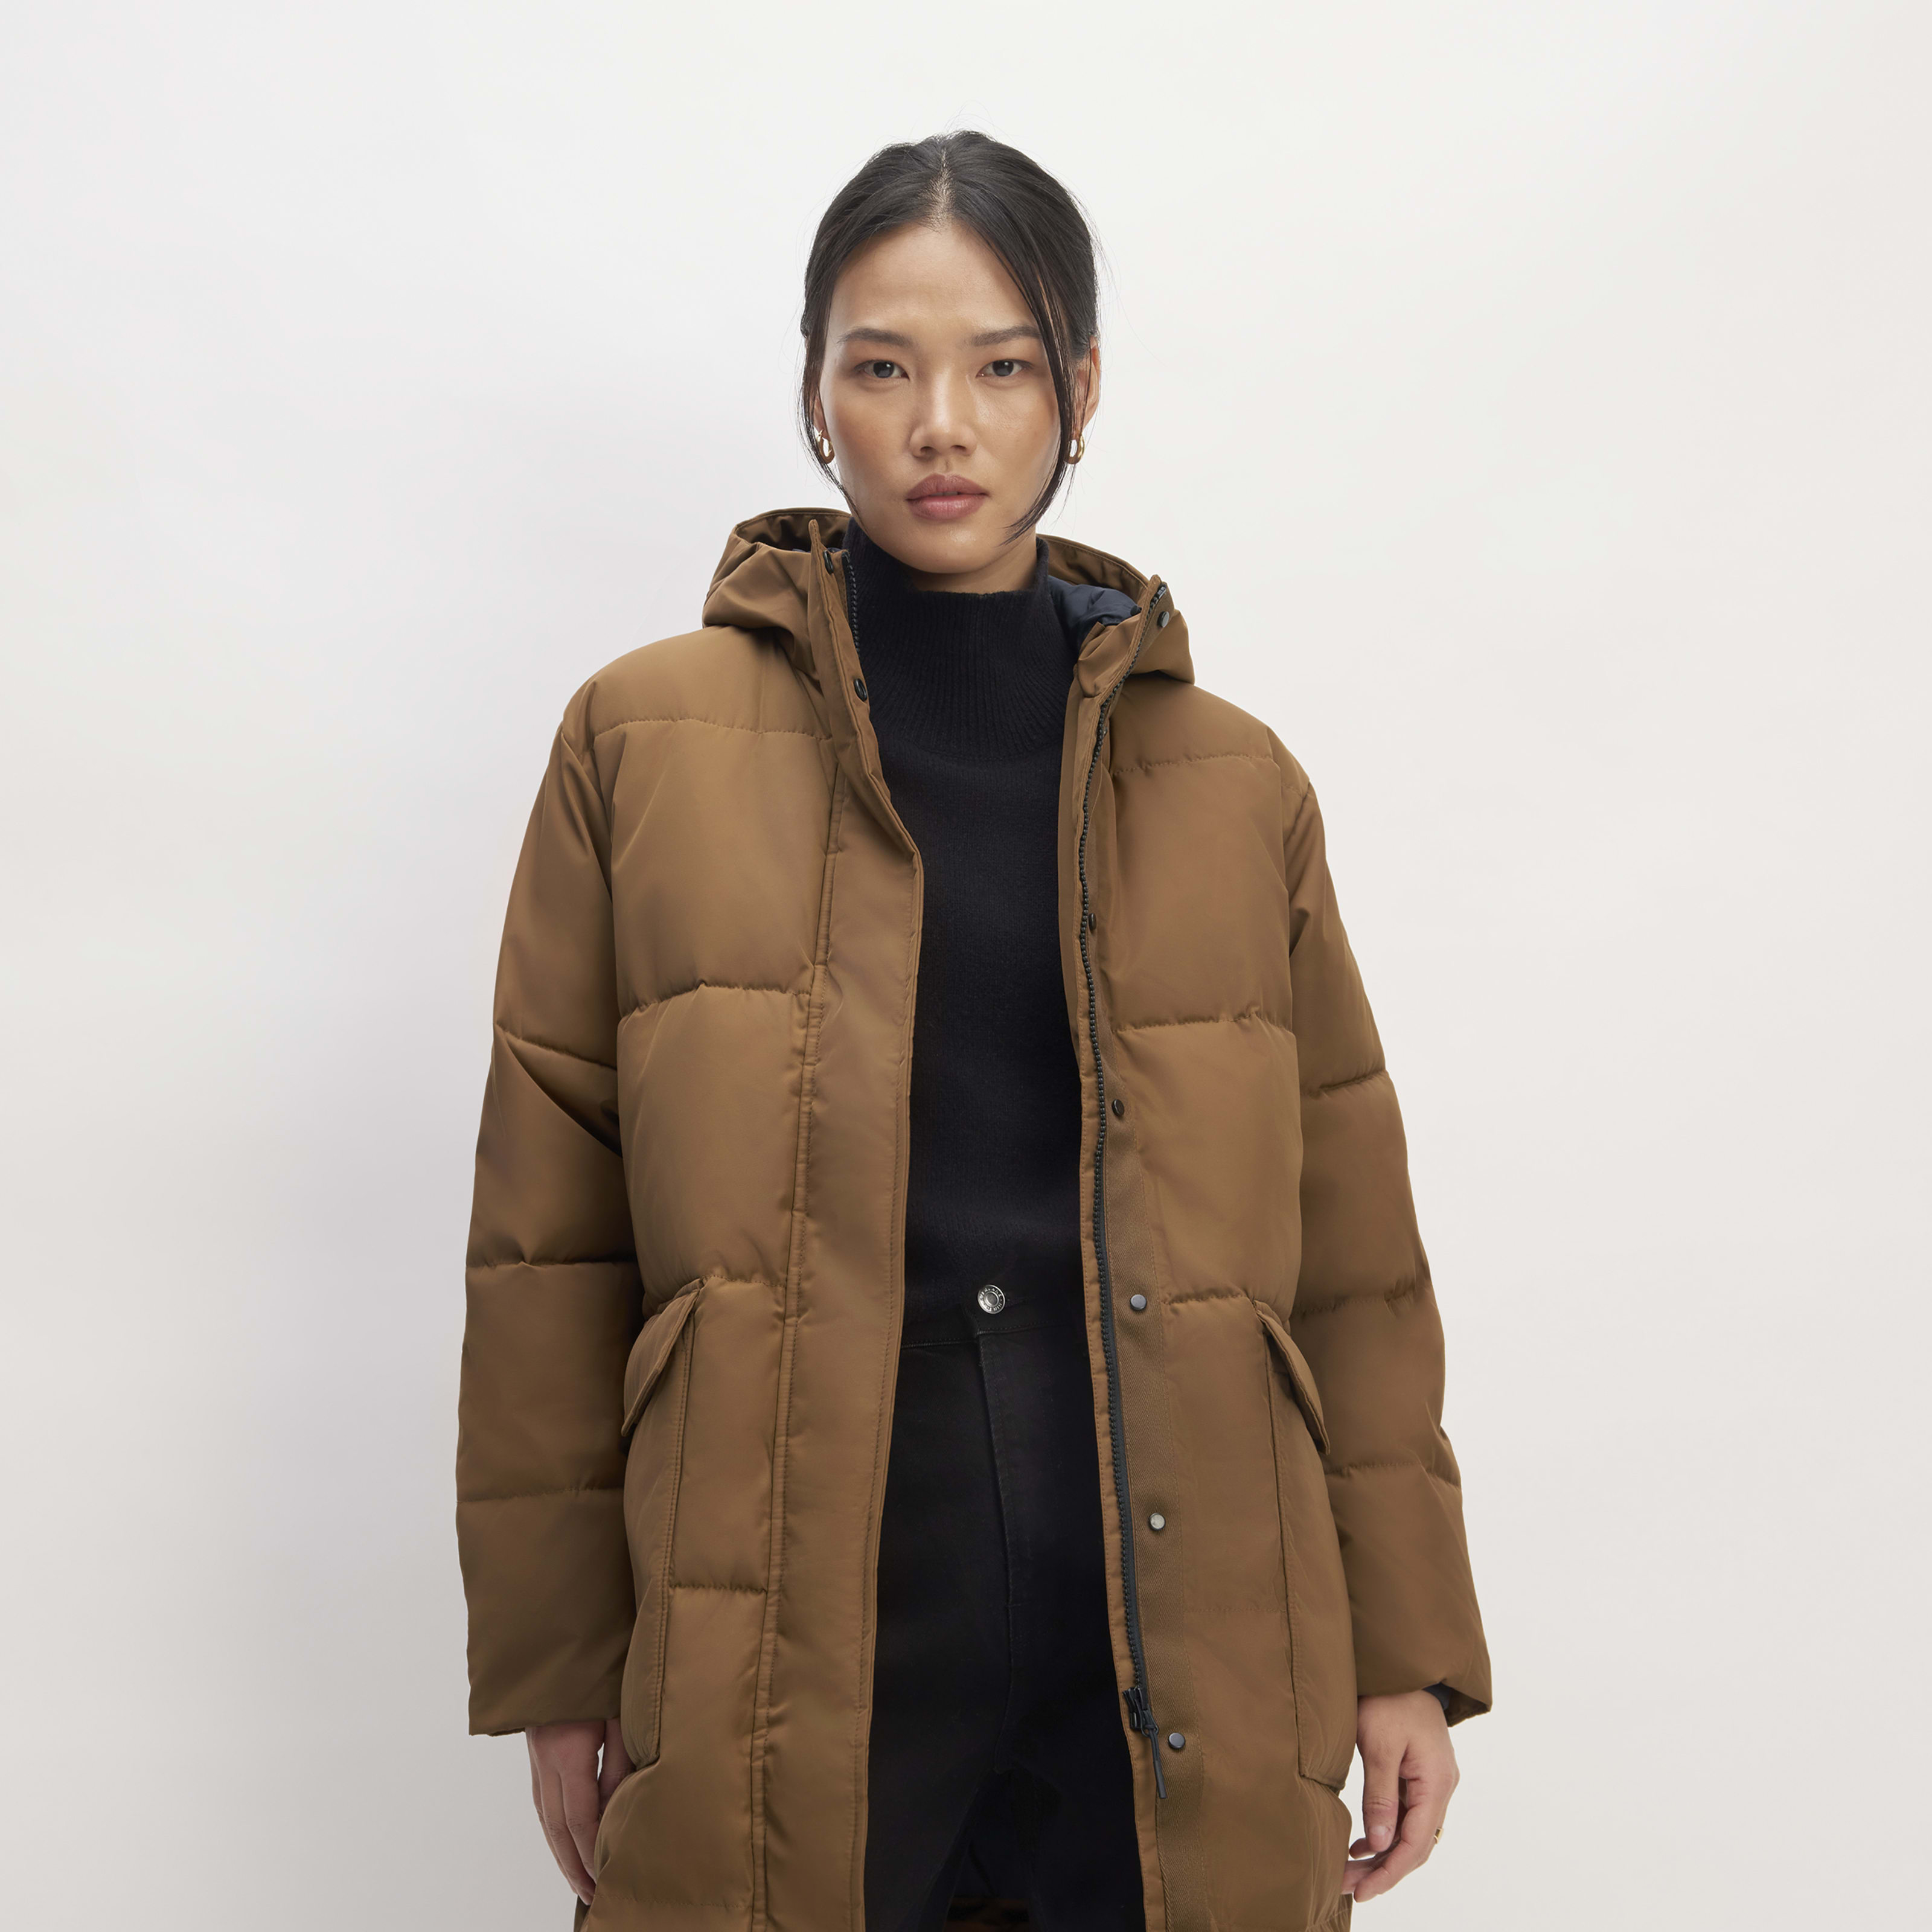 women's renew long puffer coat by everlane in chestnut, size xxs